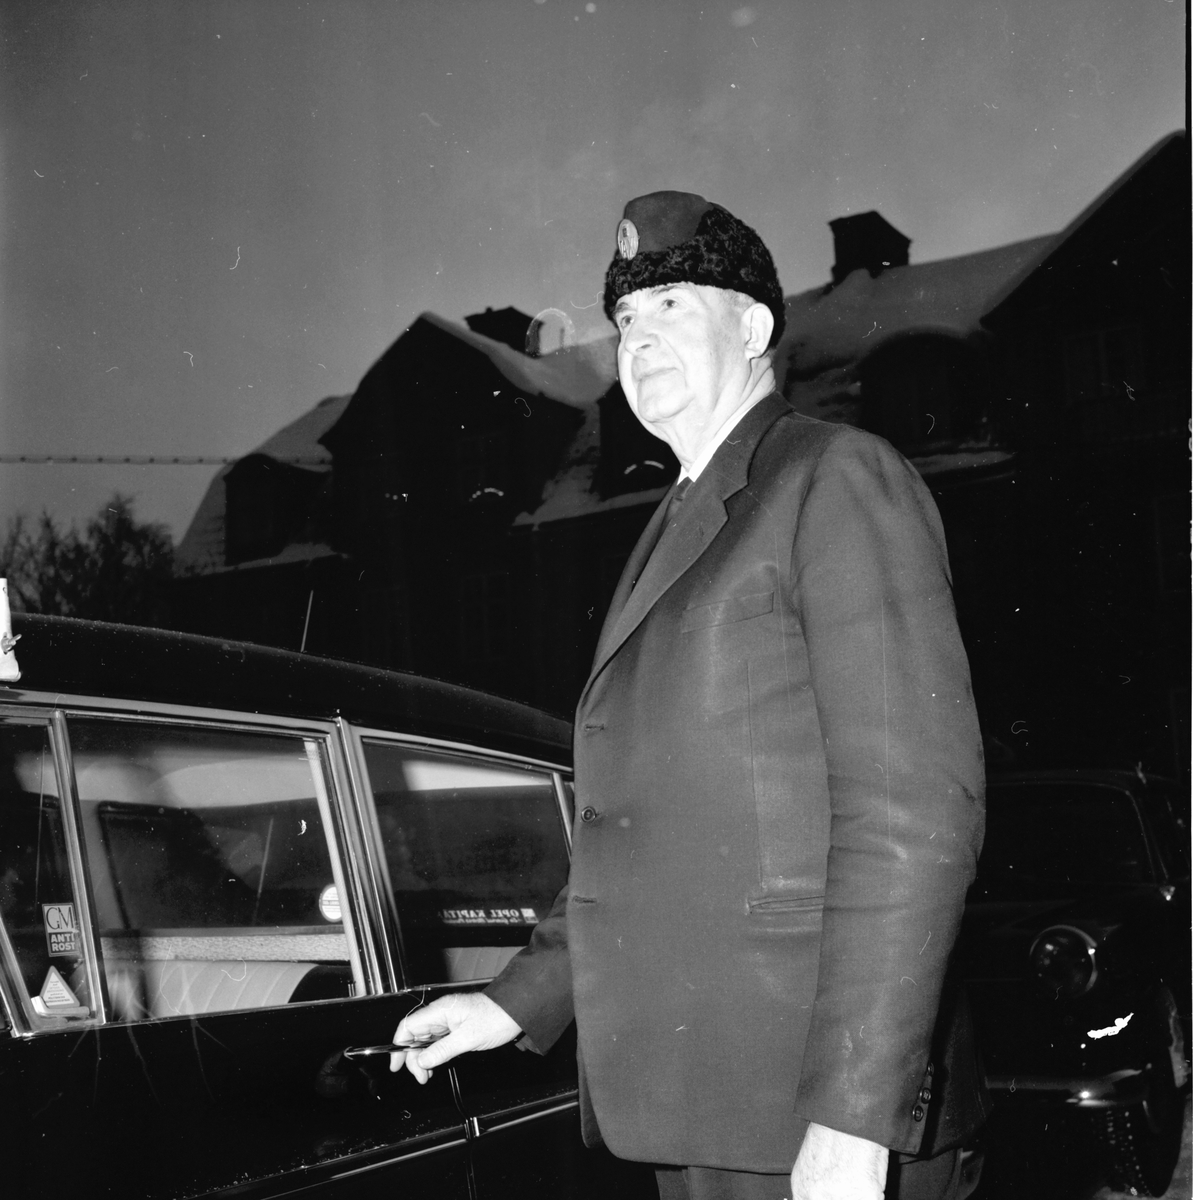 Taxi,
Bollnäs,Arbrå,
3 Jan 1965